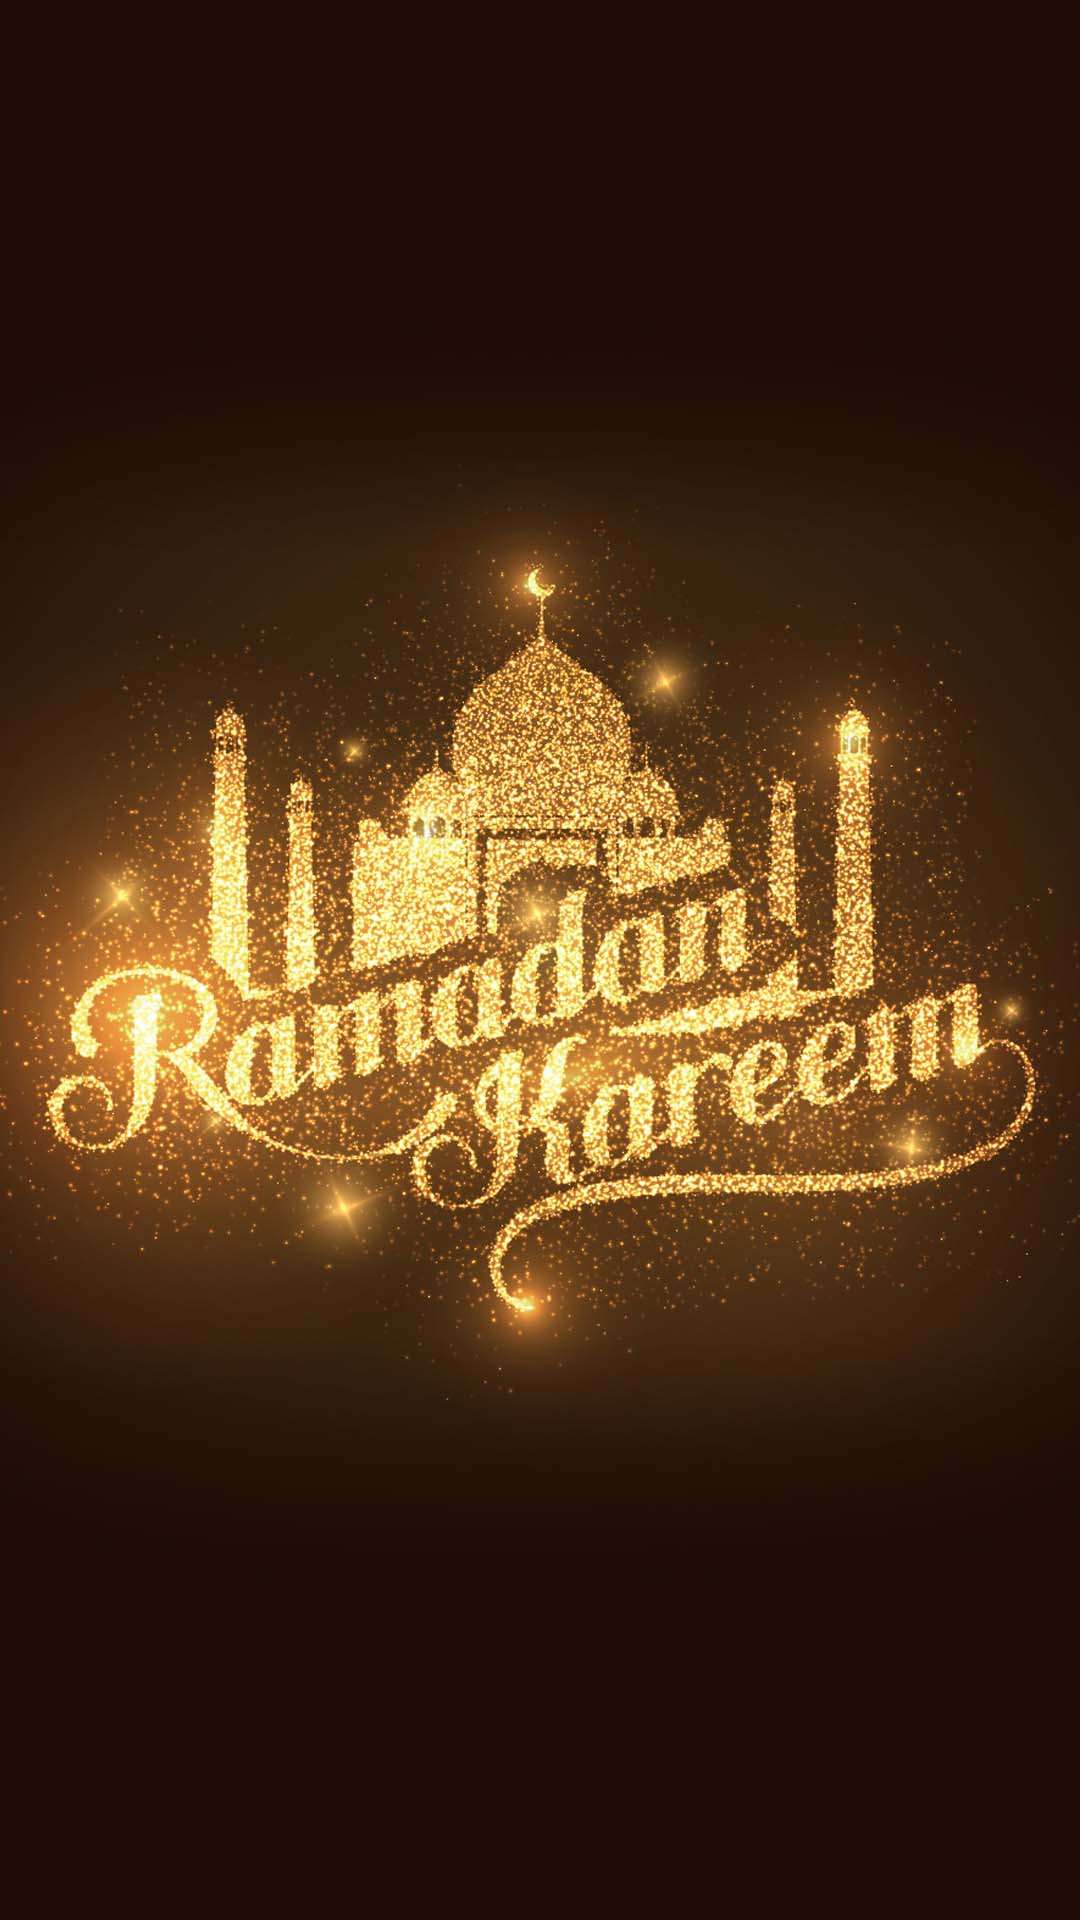 اجمل خلفيات الموبايل بمناسبه شهر رمضان 2020 HD-17